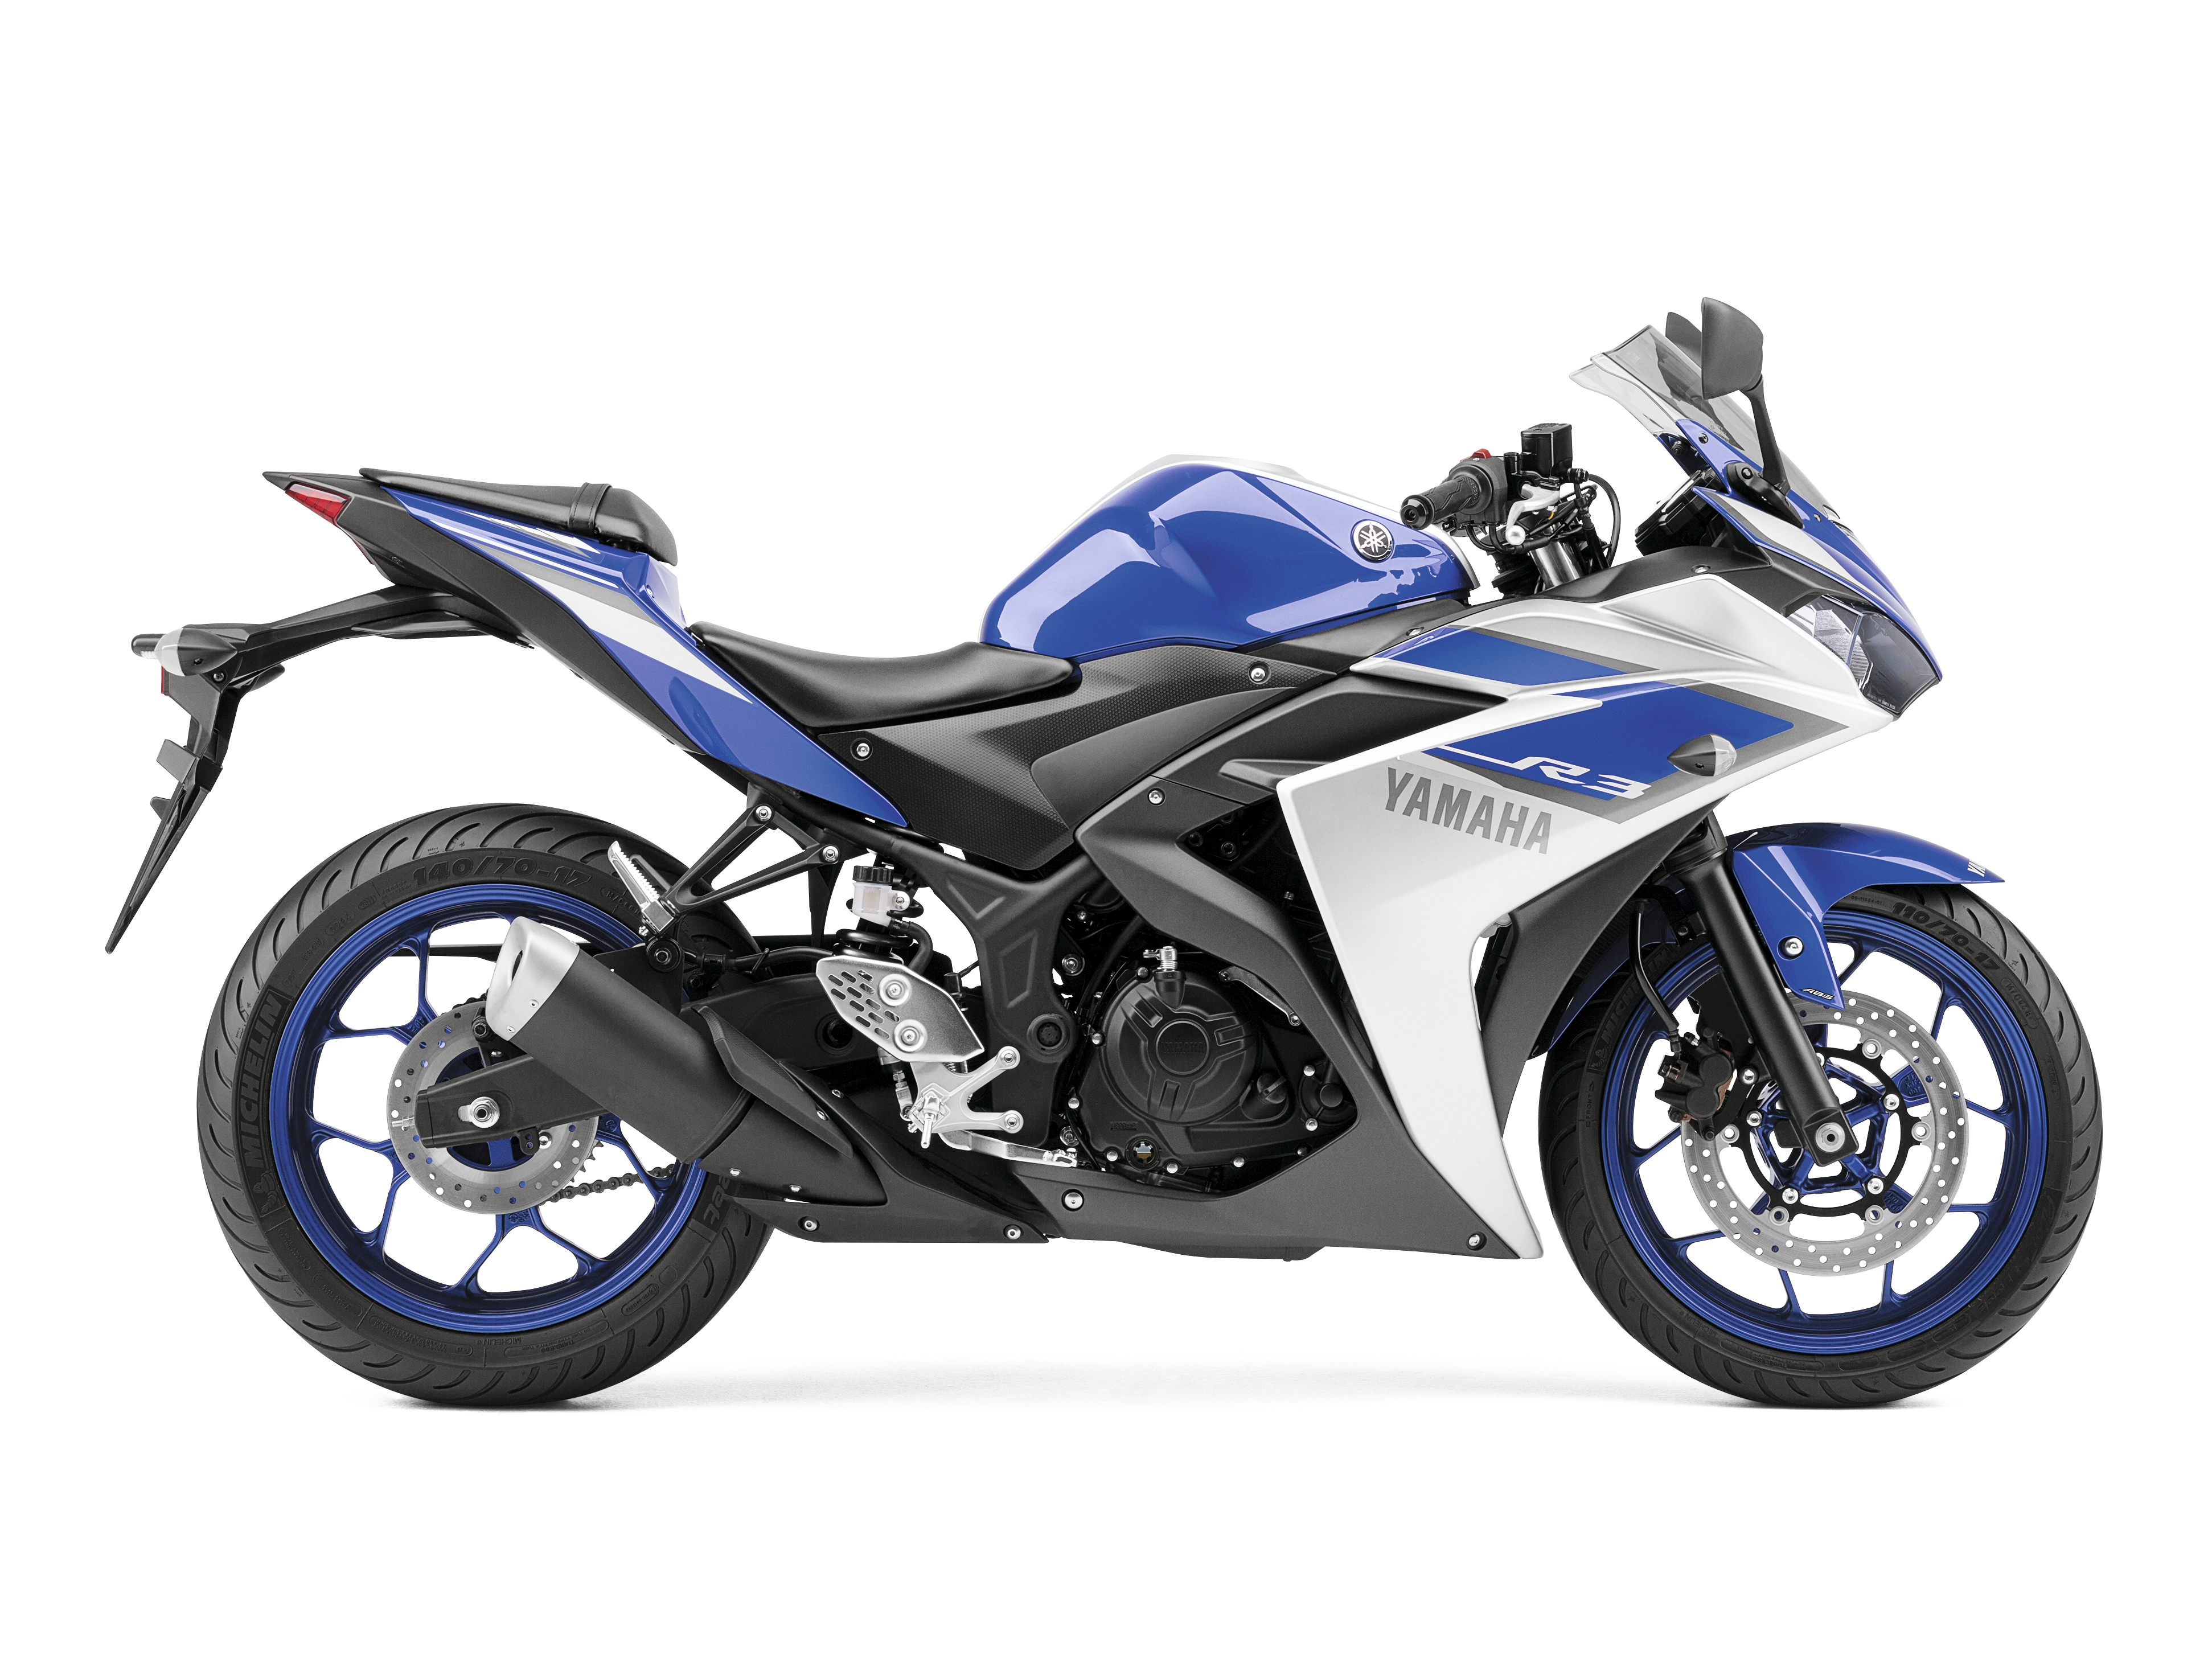 Yamaha YZF-R3 revealed